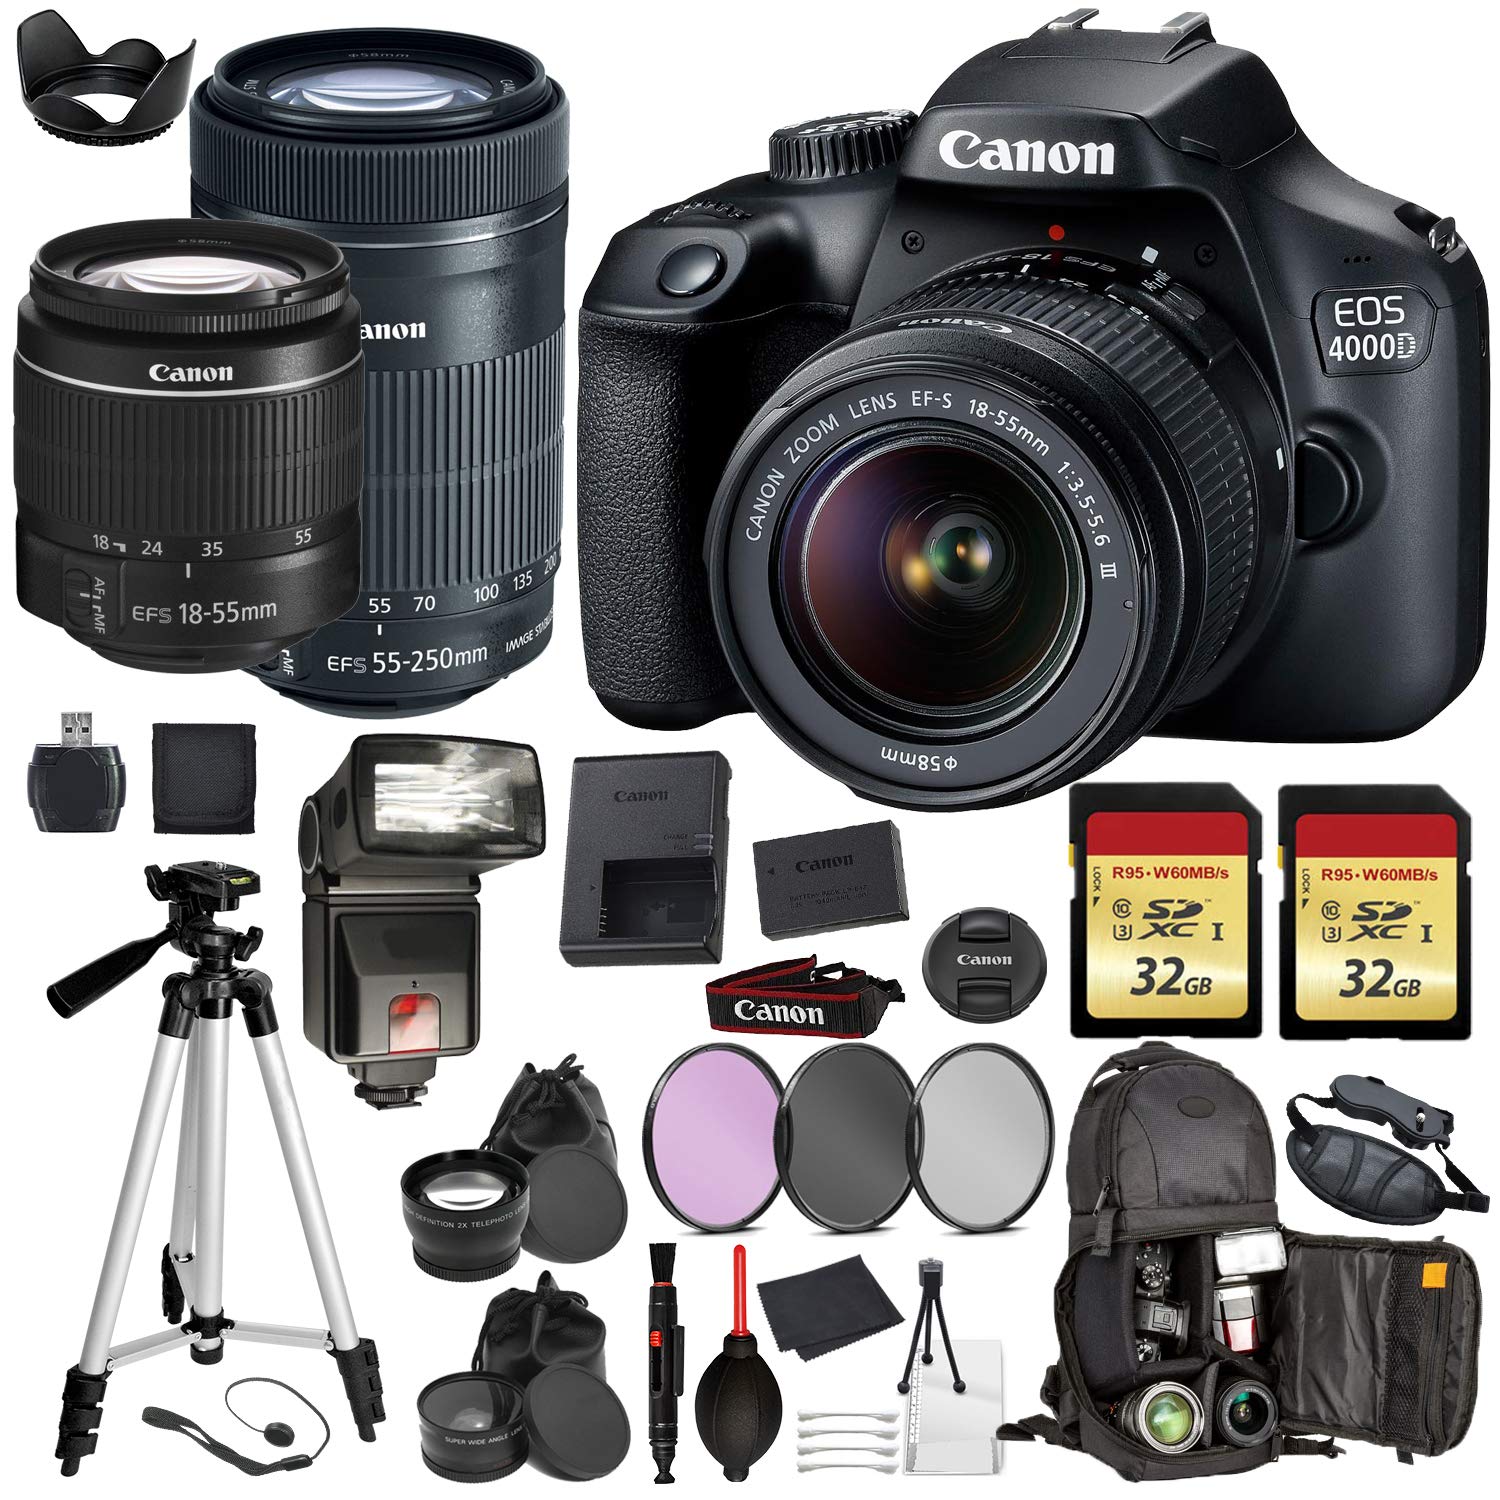 Canon EOS Rebel 4000d Digital SLR Camera with EF-S 18-55mm + EF-S 55-250mm STM (Black) Pro Accessory Bundle Package Deal